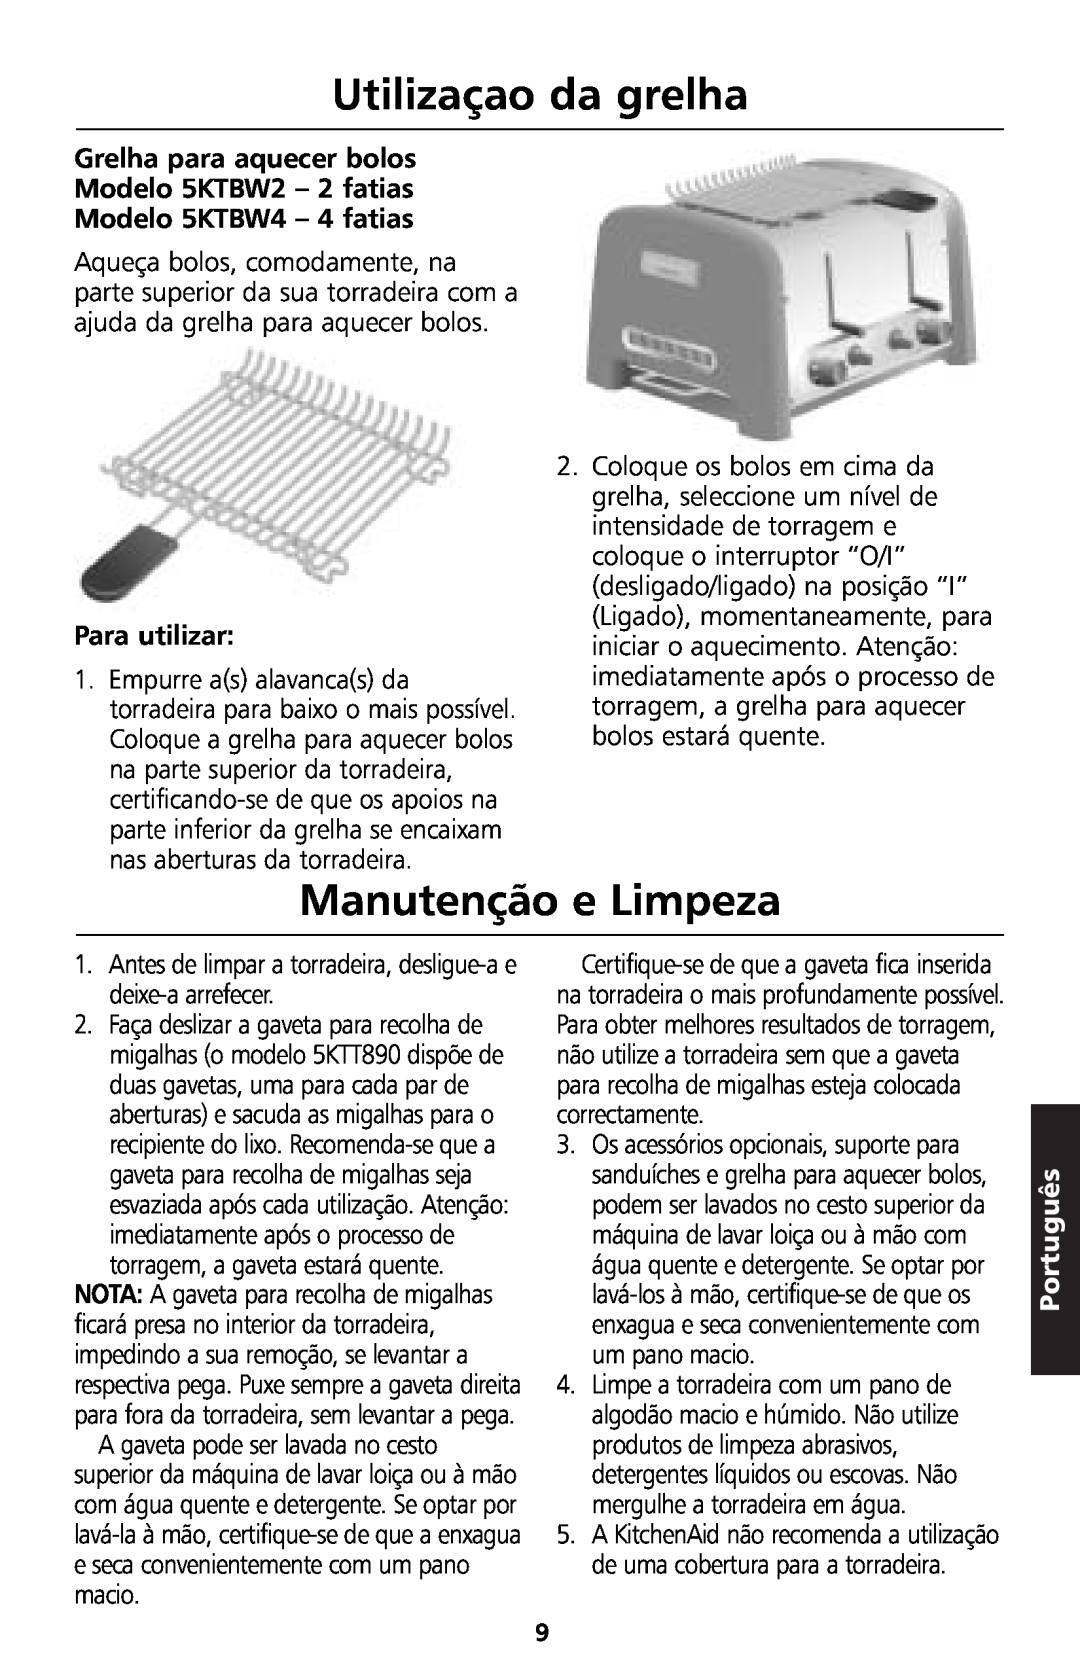 KitchenAid 5KTT890 manual Utilizaçao da grelha, Manutenção e Limpeza, Para utilizar, Português 